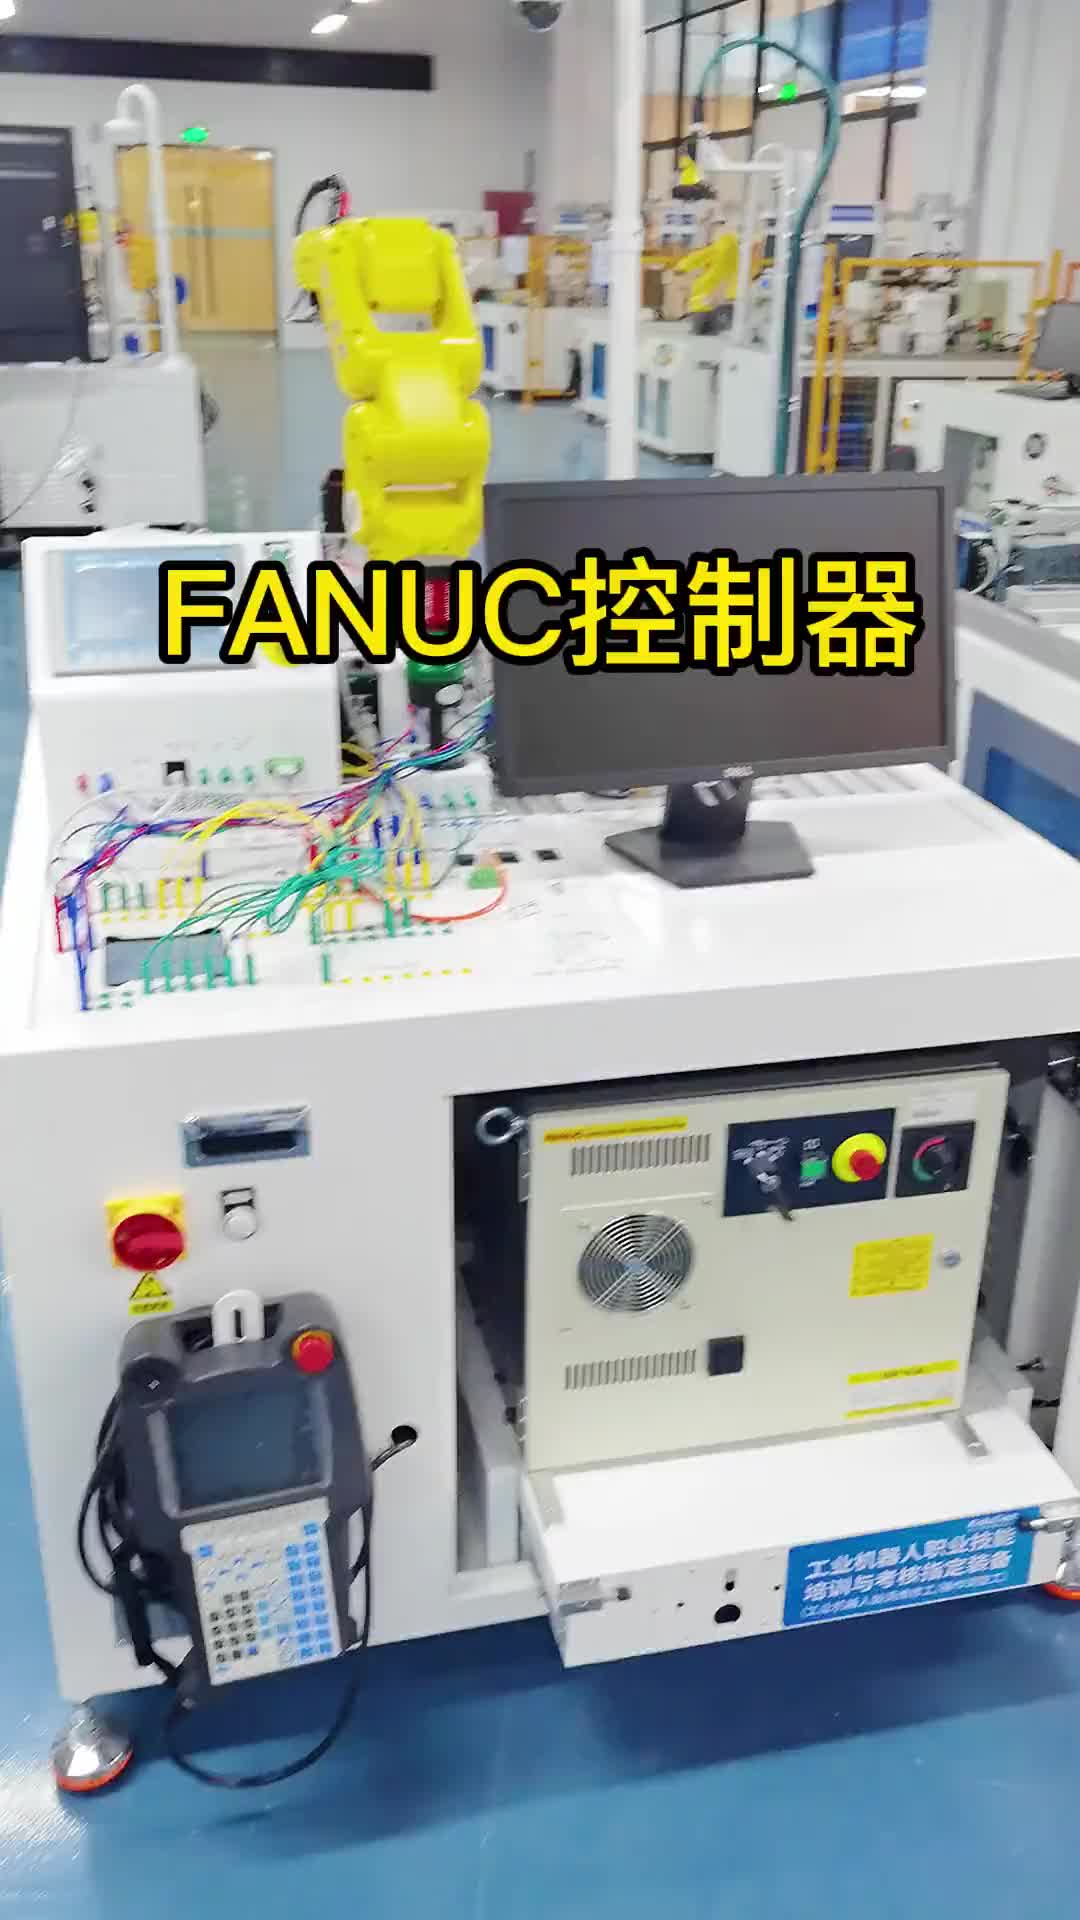 FANUC的控制器怎么开门你们知道吗？#控制器 #自动化设备 #机械臂 